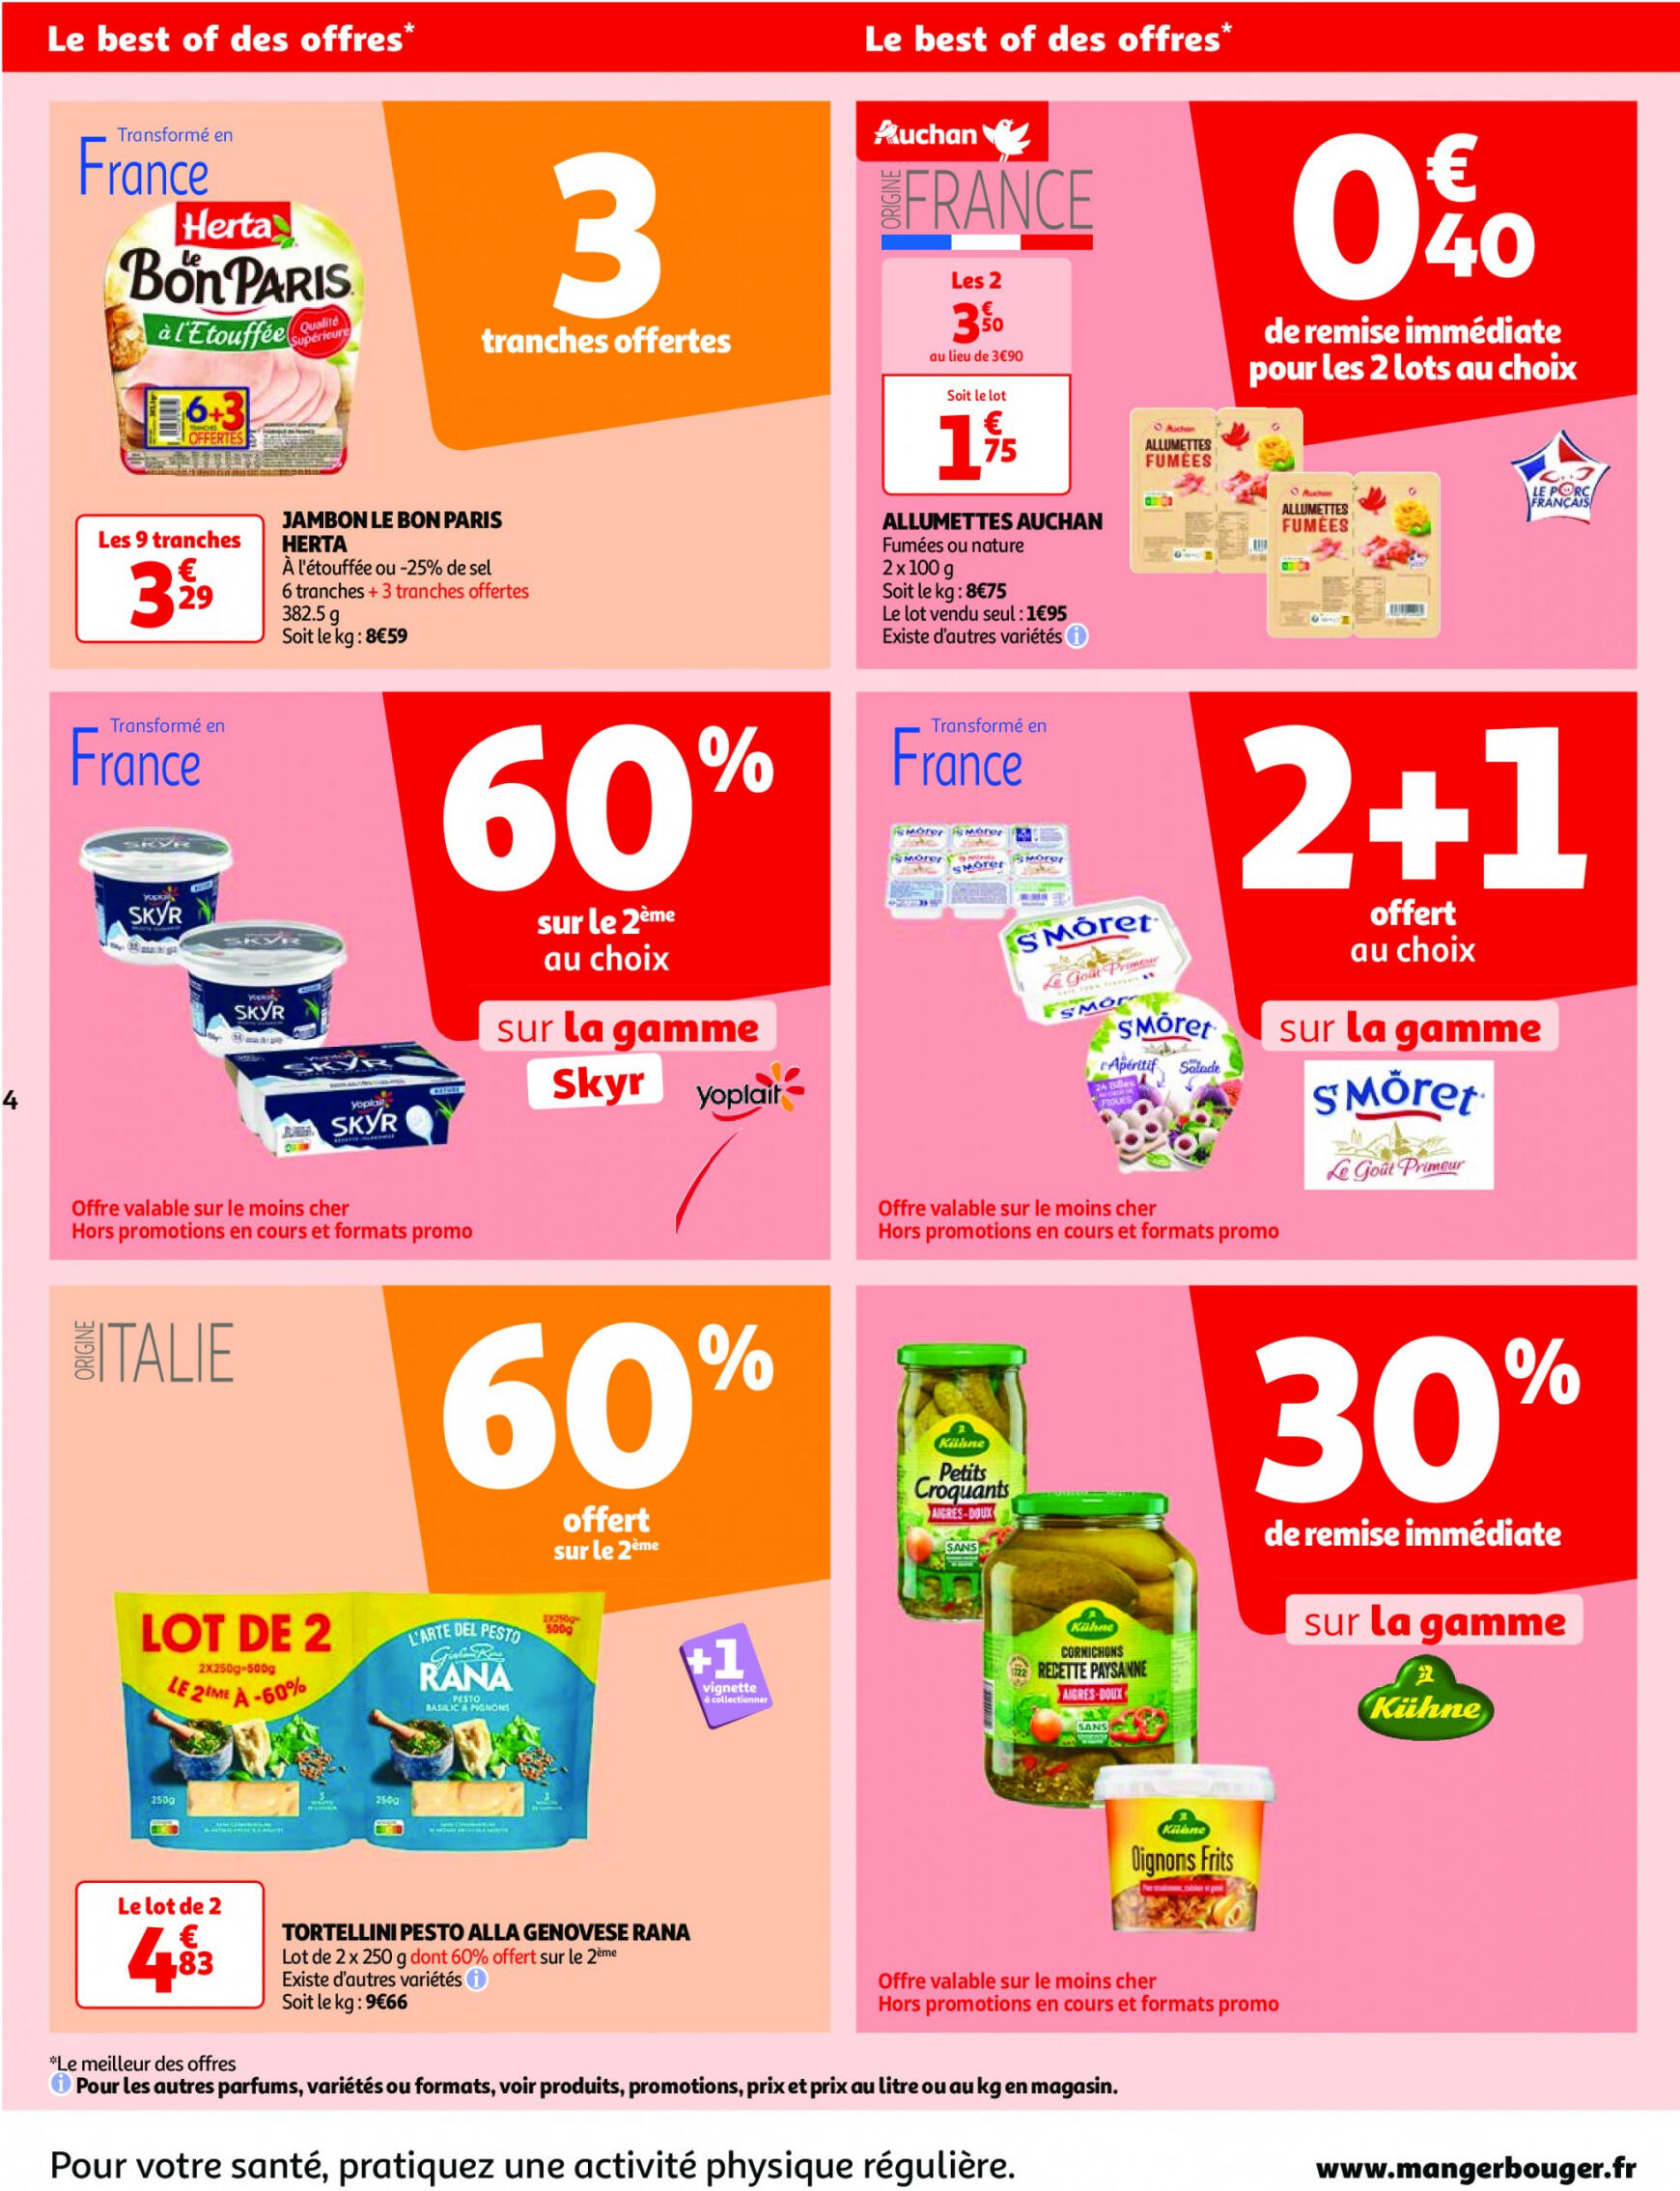 auchan - Auchan - Nos surgelés ont tout bon folder huidig 14.05. - 21.05. - page: 4